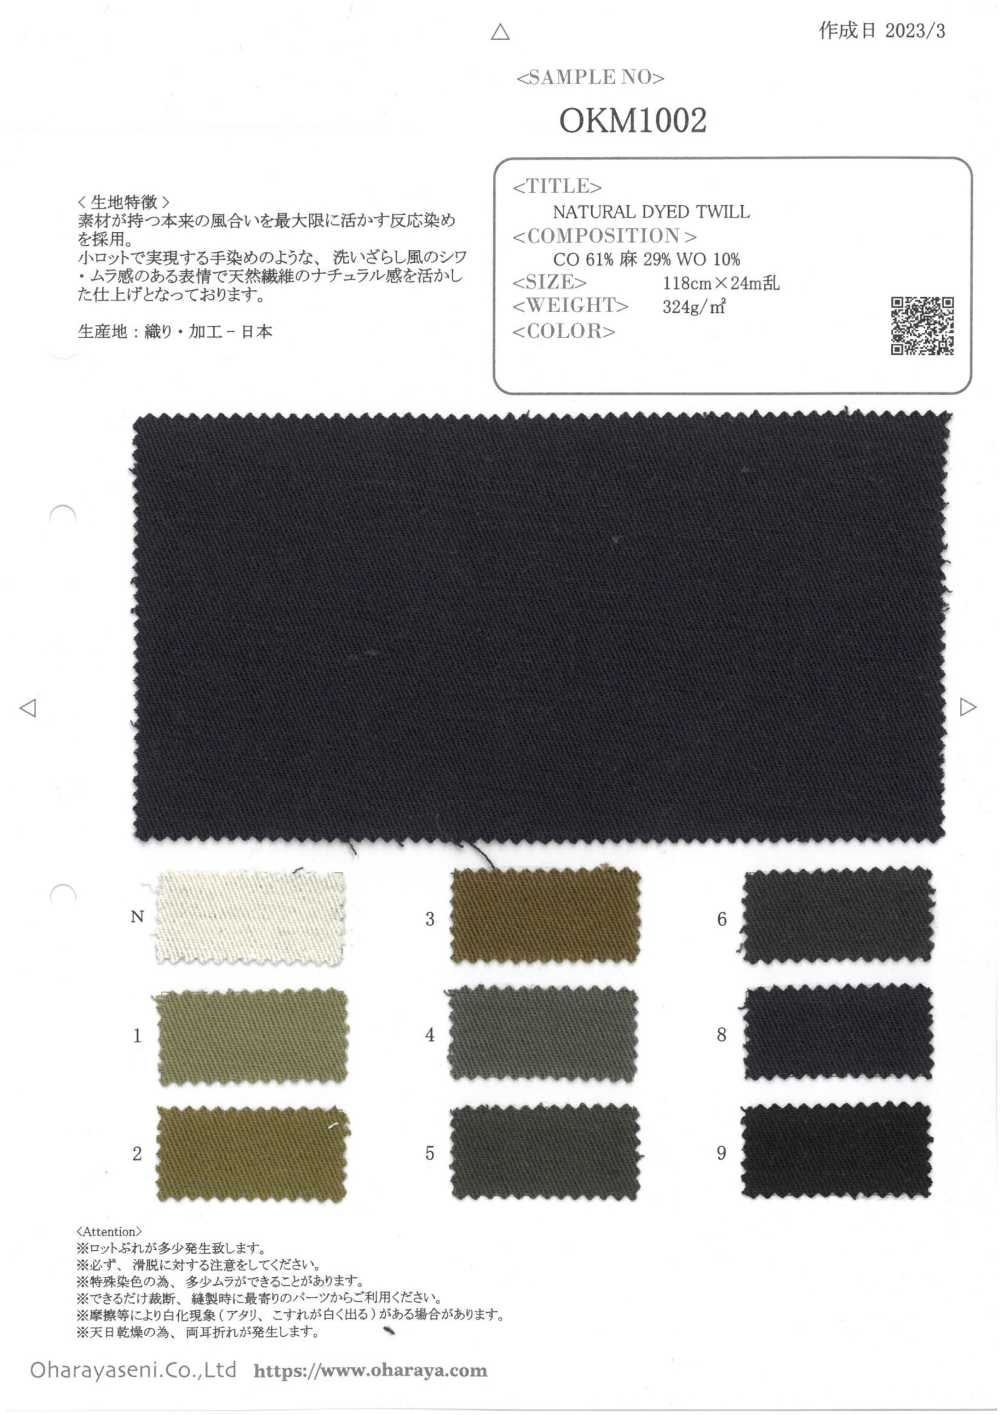 OKM1002 NATURAL DYED TWILL[Textile / Fabric] Oharayaseni